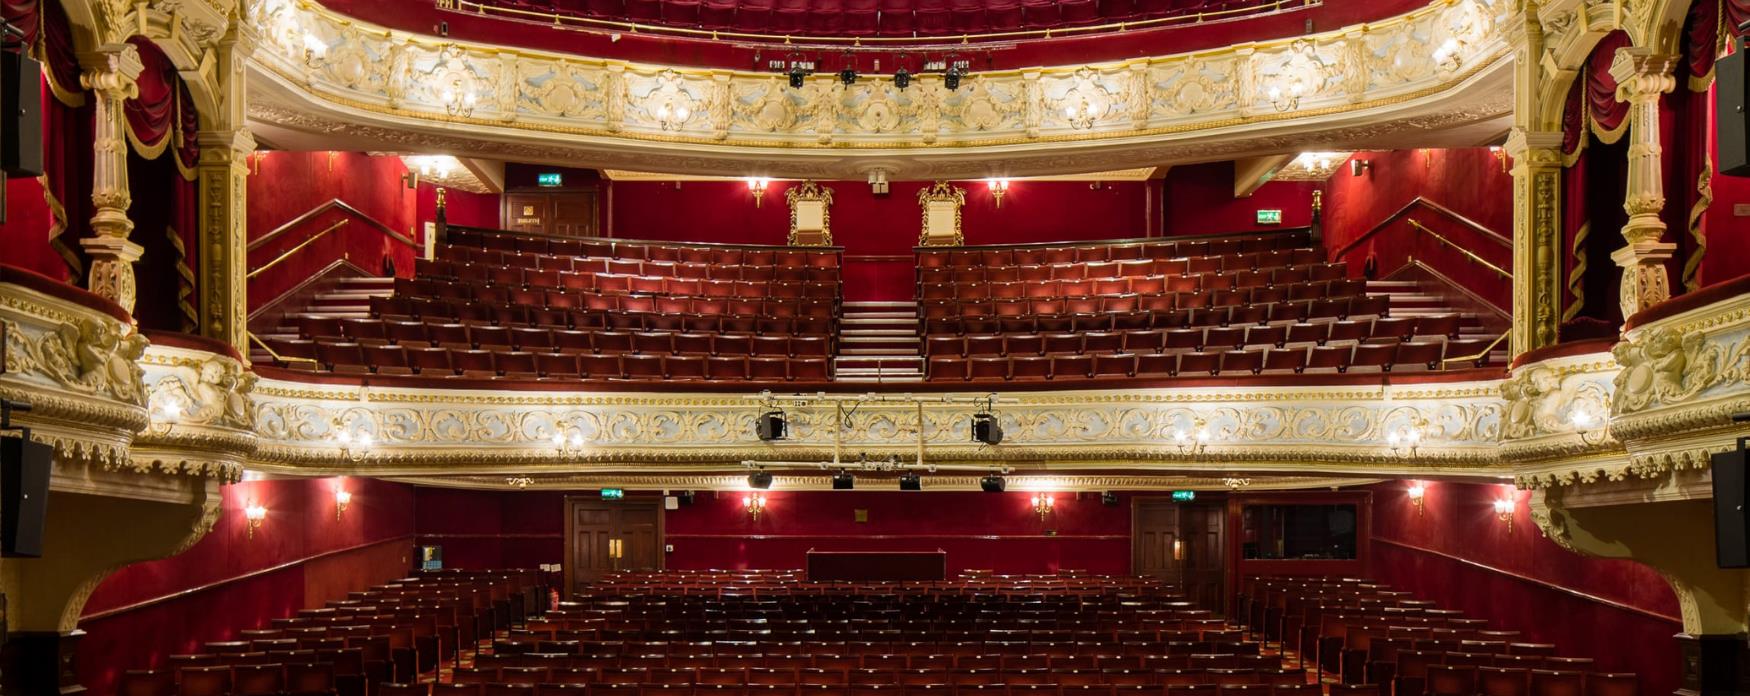 View of Richmond theatre - Richmond Theatre Interior